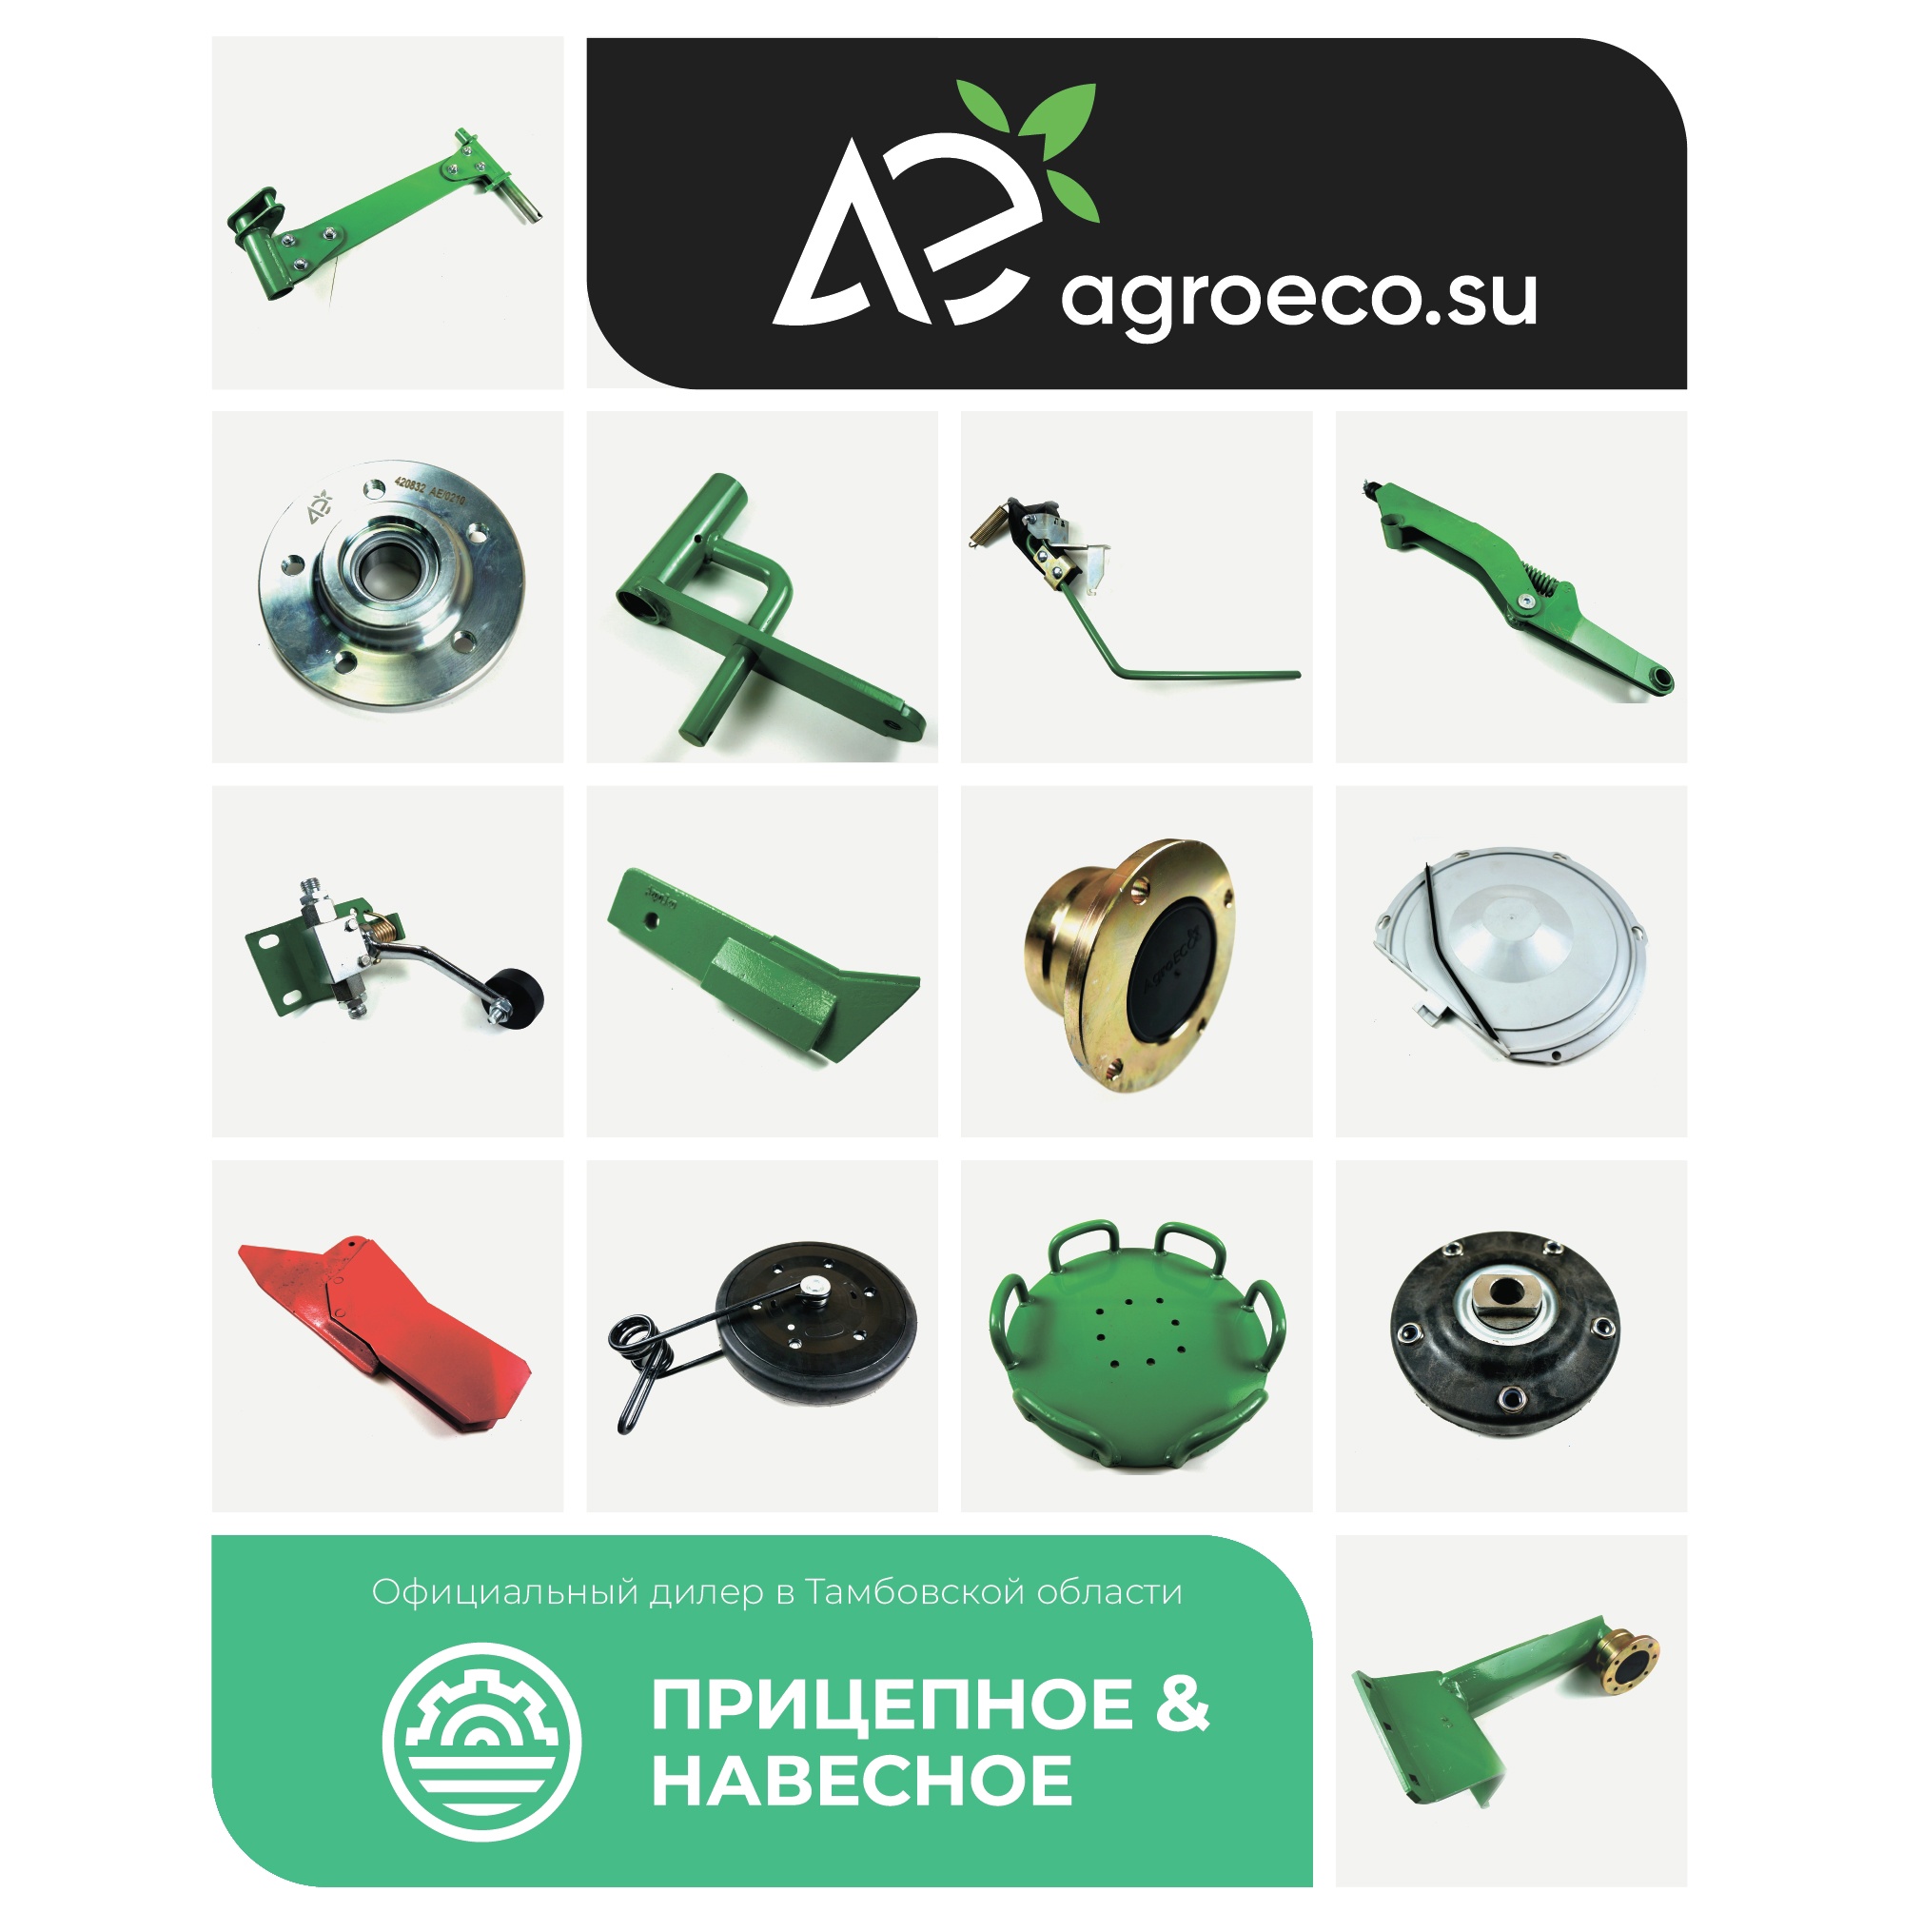 Официальный дилер компании АгроЭко в Тамбовской области